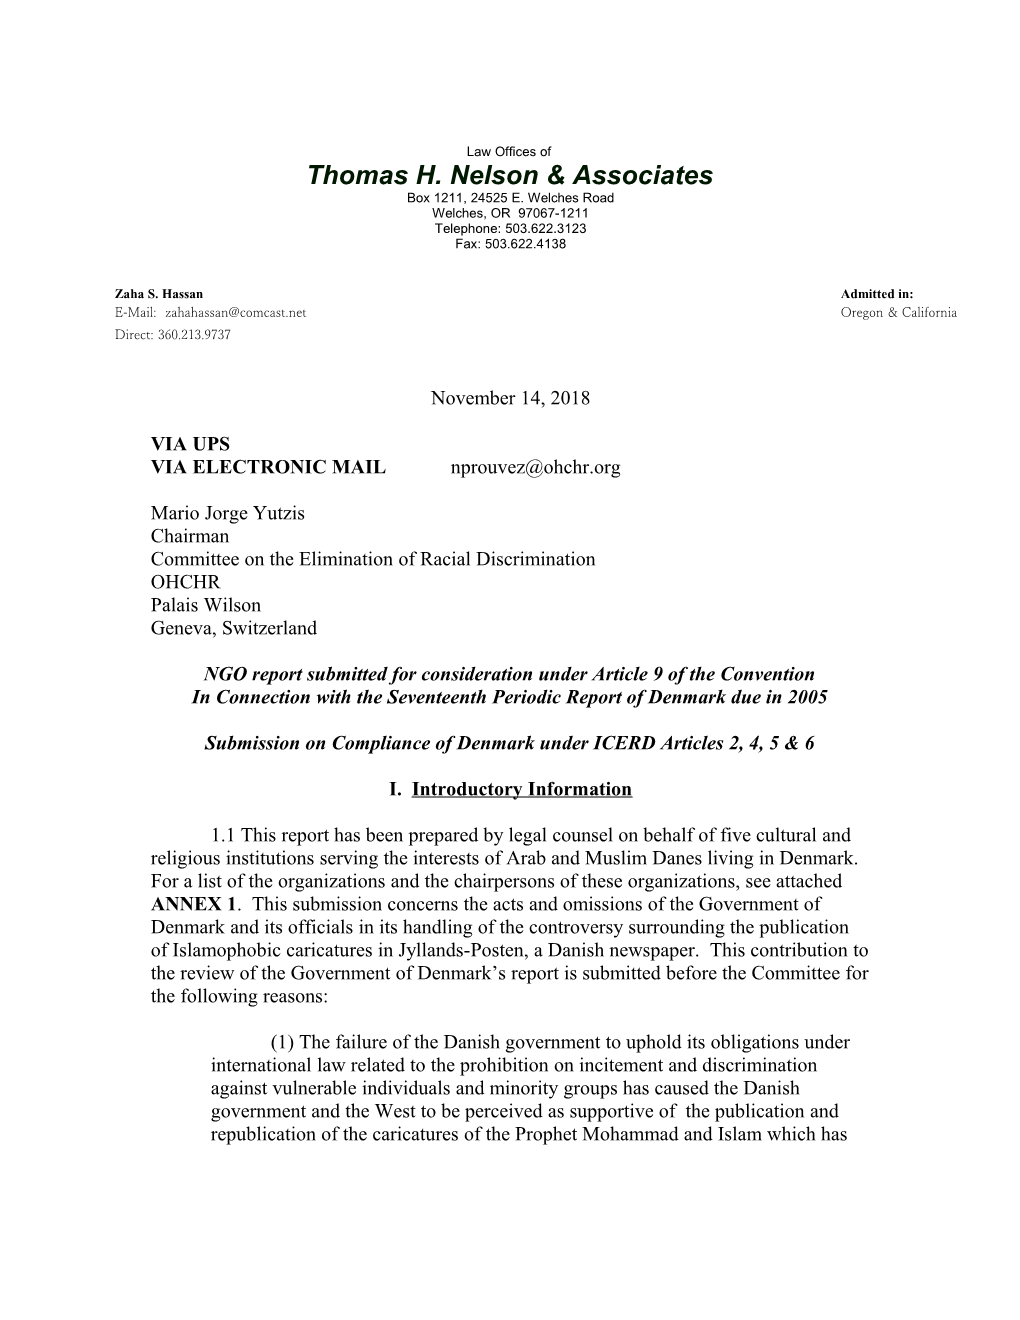 Thomas H. Nelson & Associates